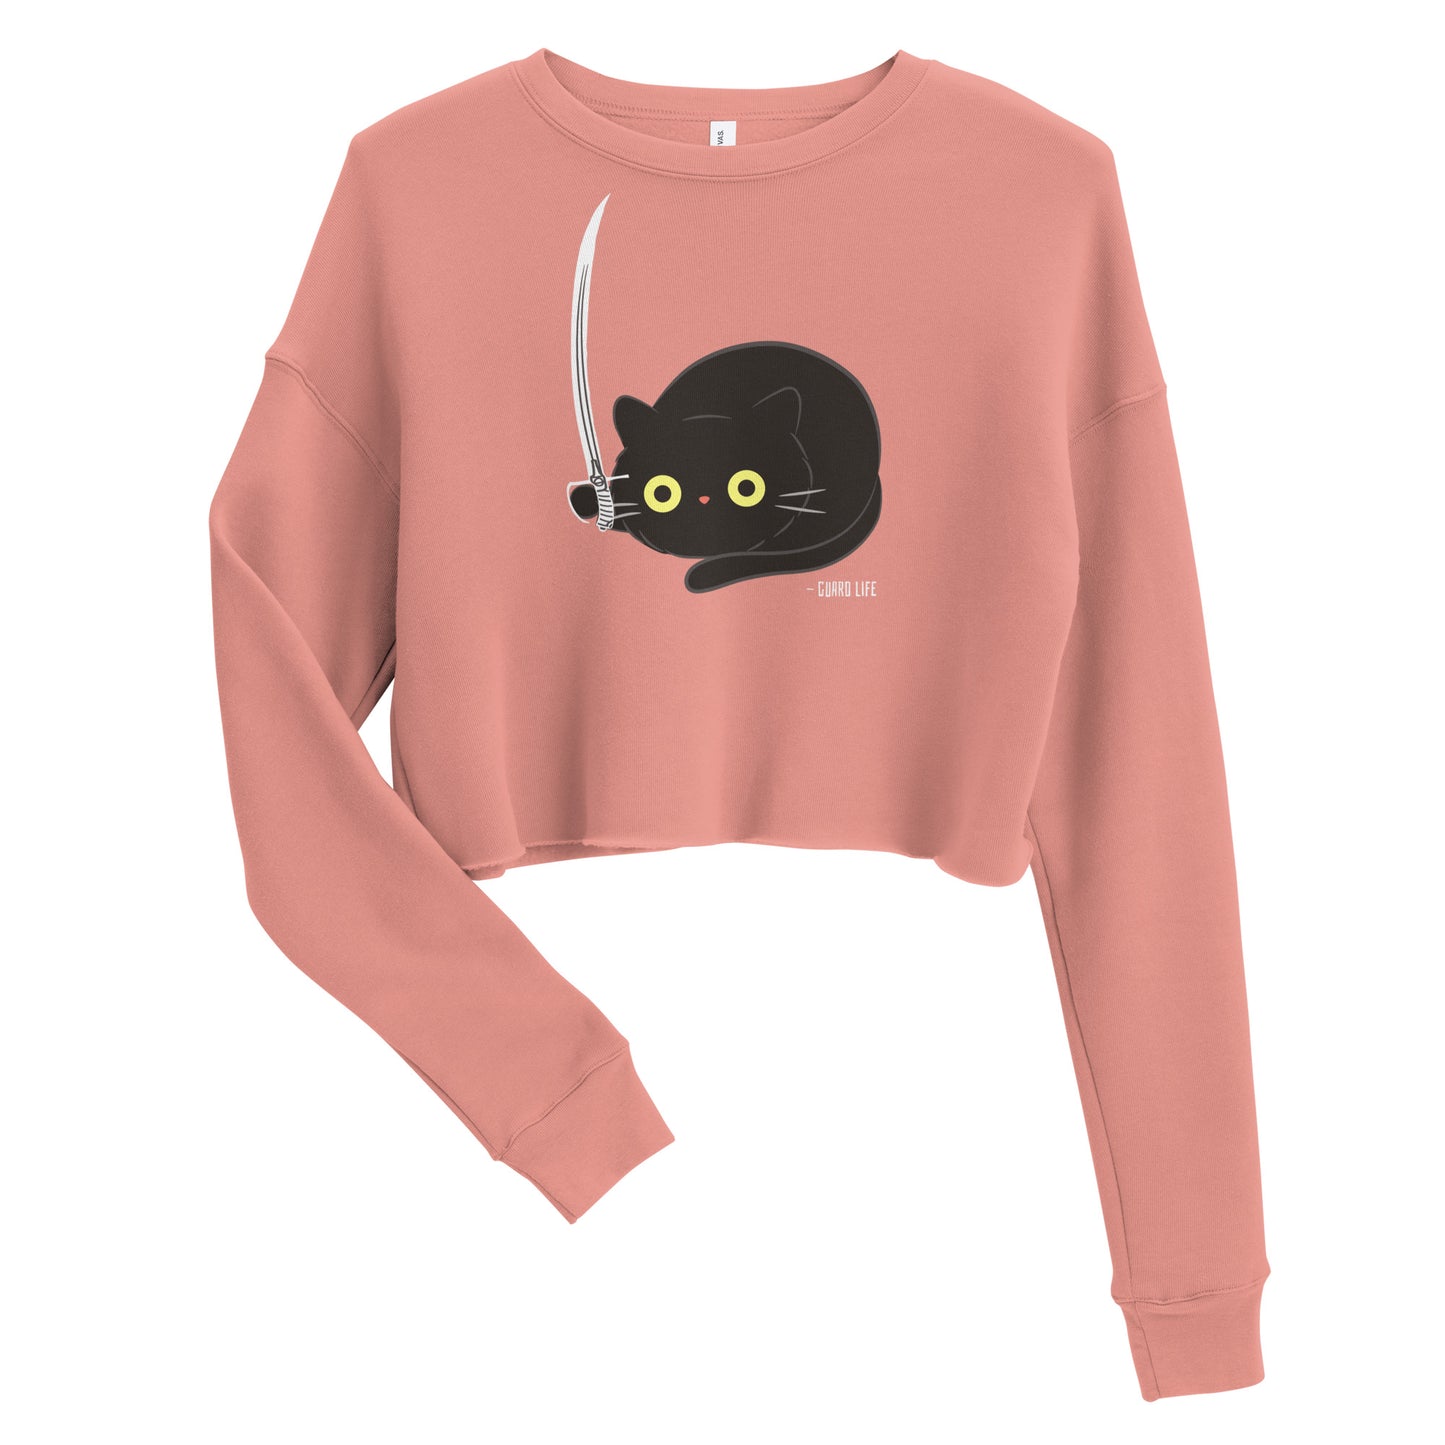 Cute Black Cat plays with Sabre Crop Sweatshirt